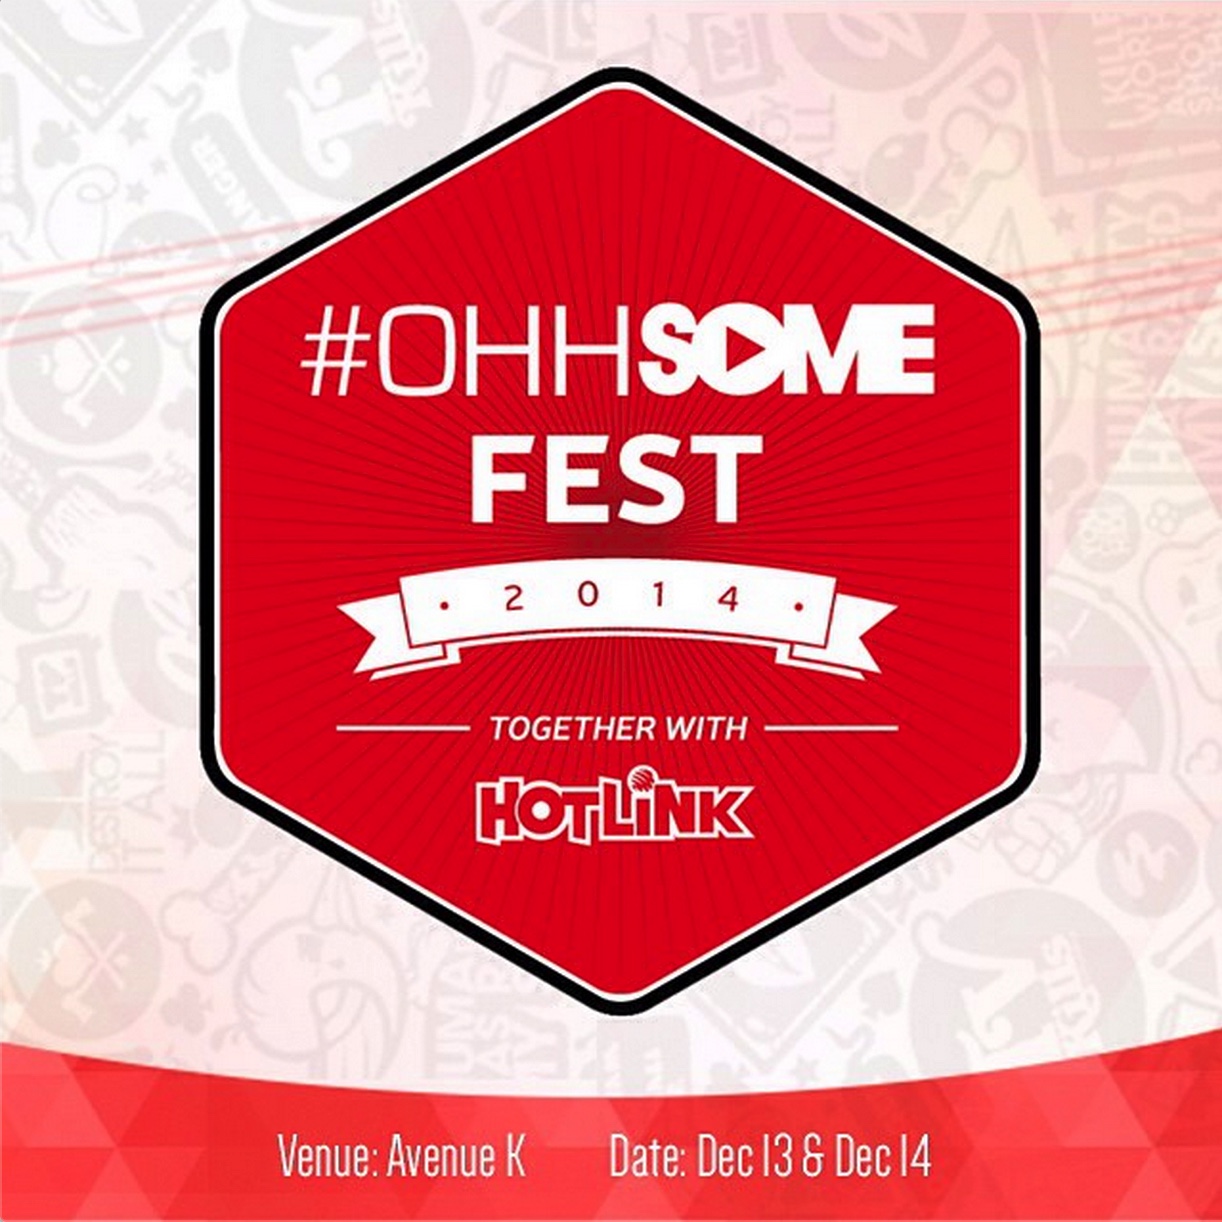 Temui Beberapa Startup Tempatan Pada 13-14 Disember Ini di #OhhSOME Fest